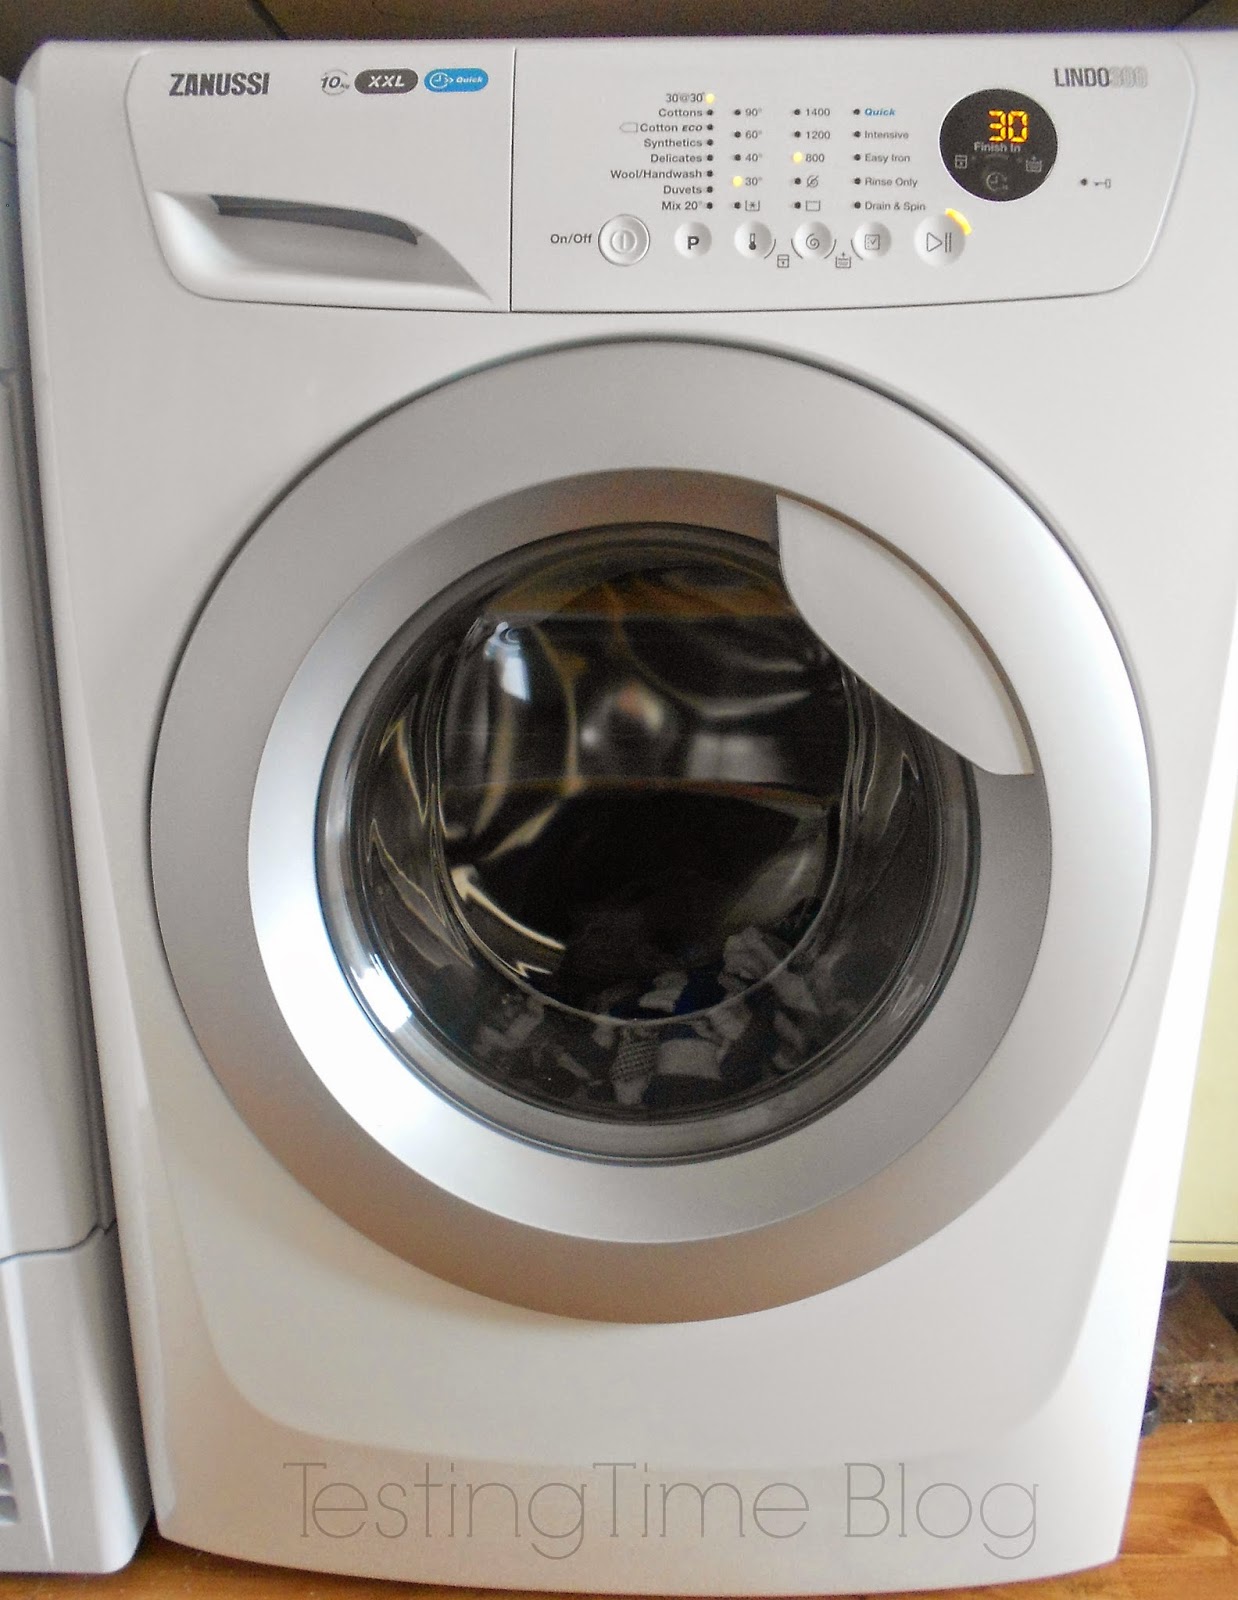 Zanussi Lindo300 Zwf01483wr Freestanding Washing Machine